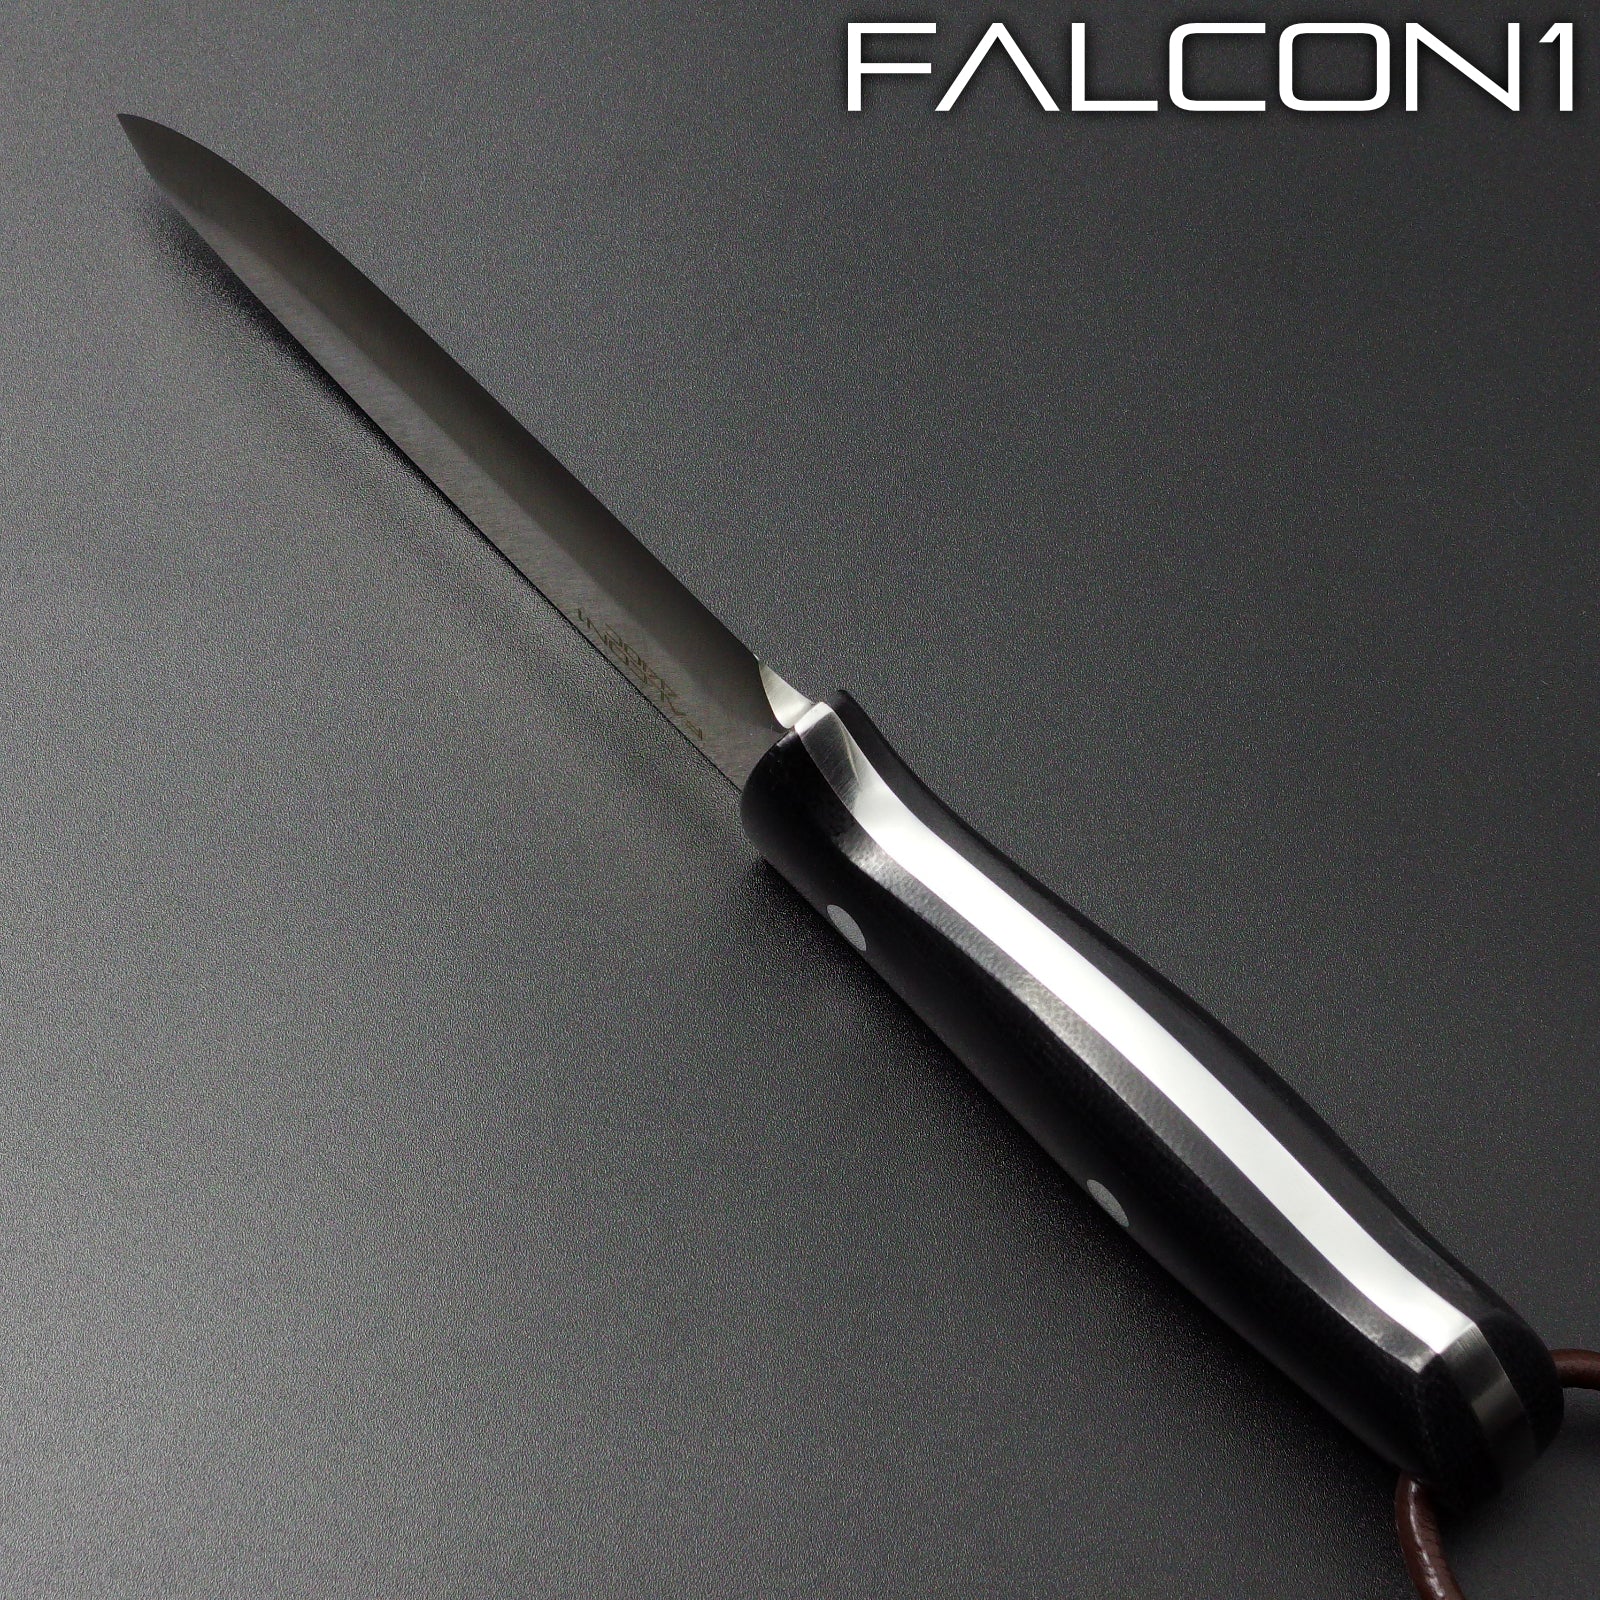 ALTEMA(アルテマ) ブッシュクラフトナイフ FALCON1 ハマグリ刃 